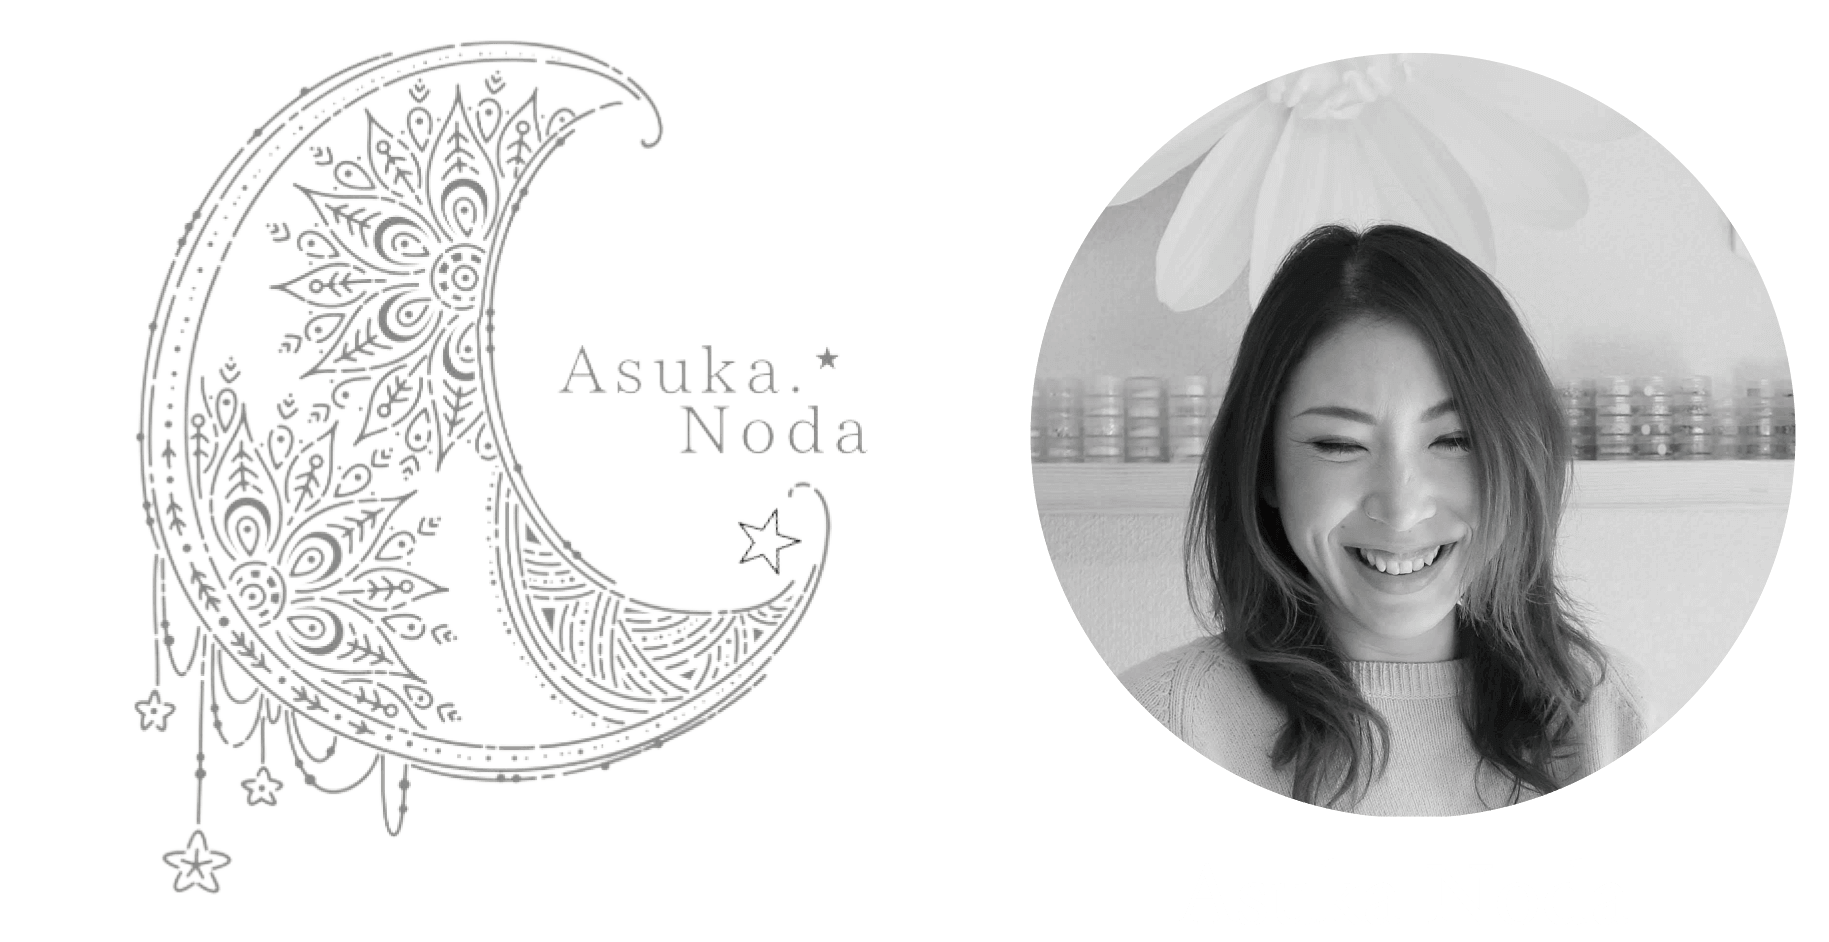 Asuka Noda